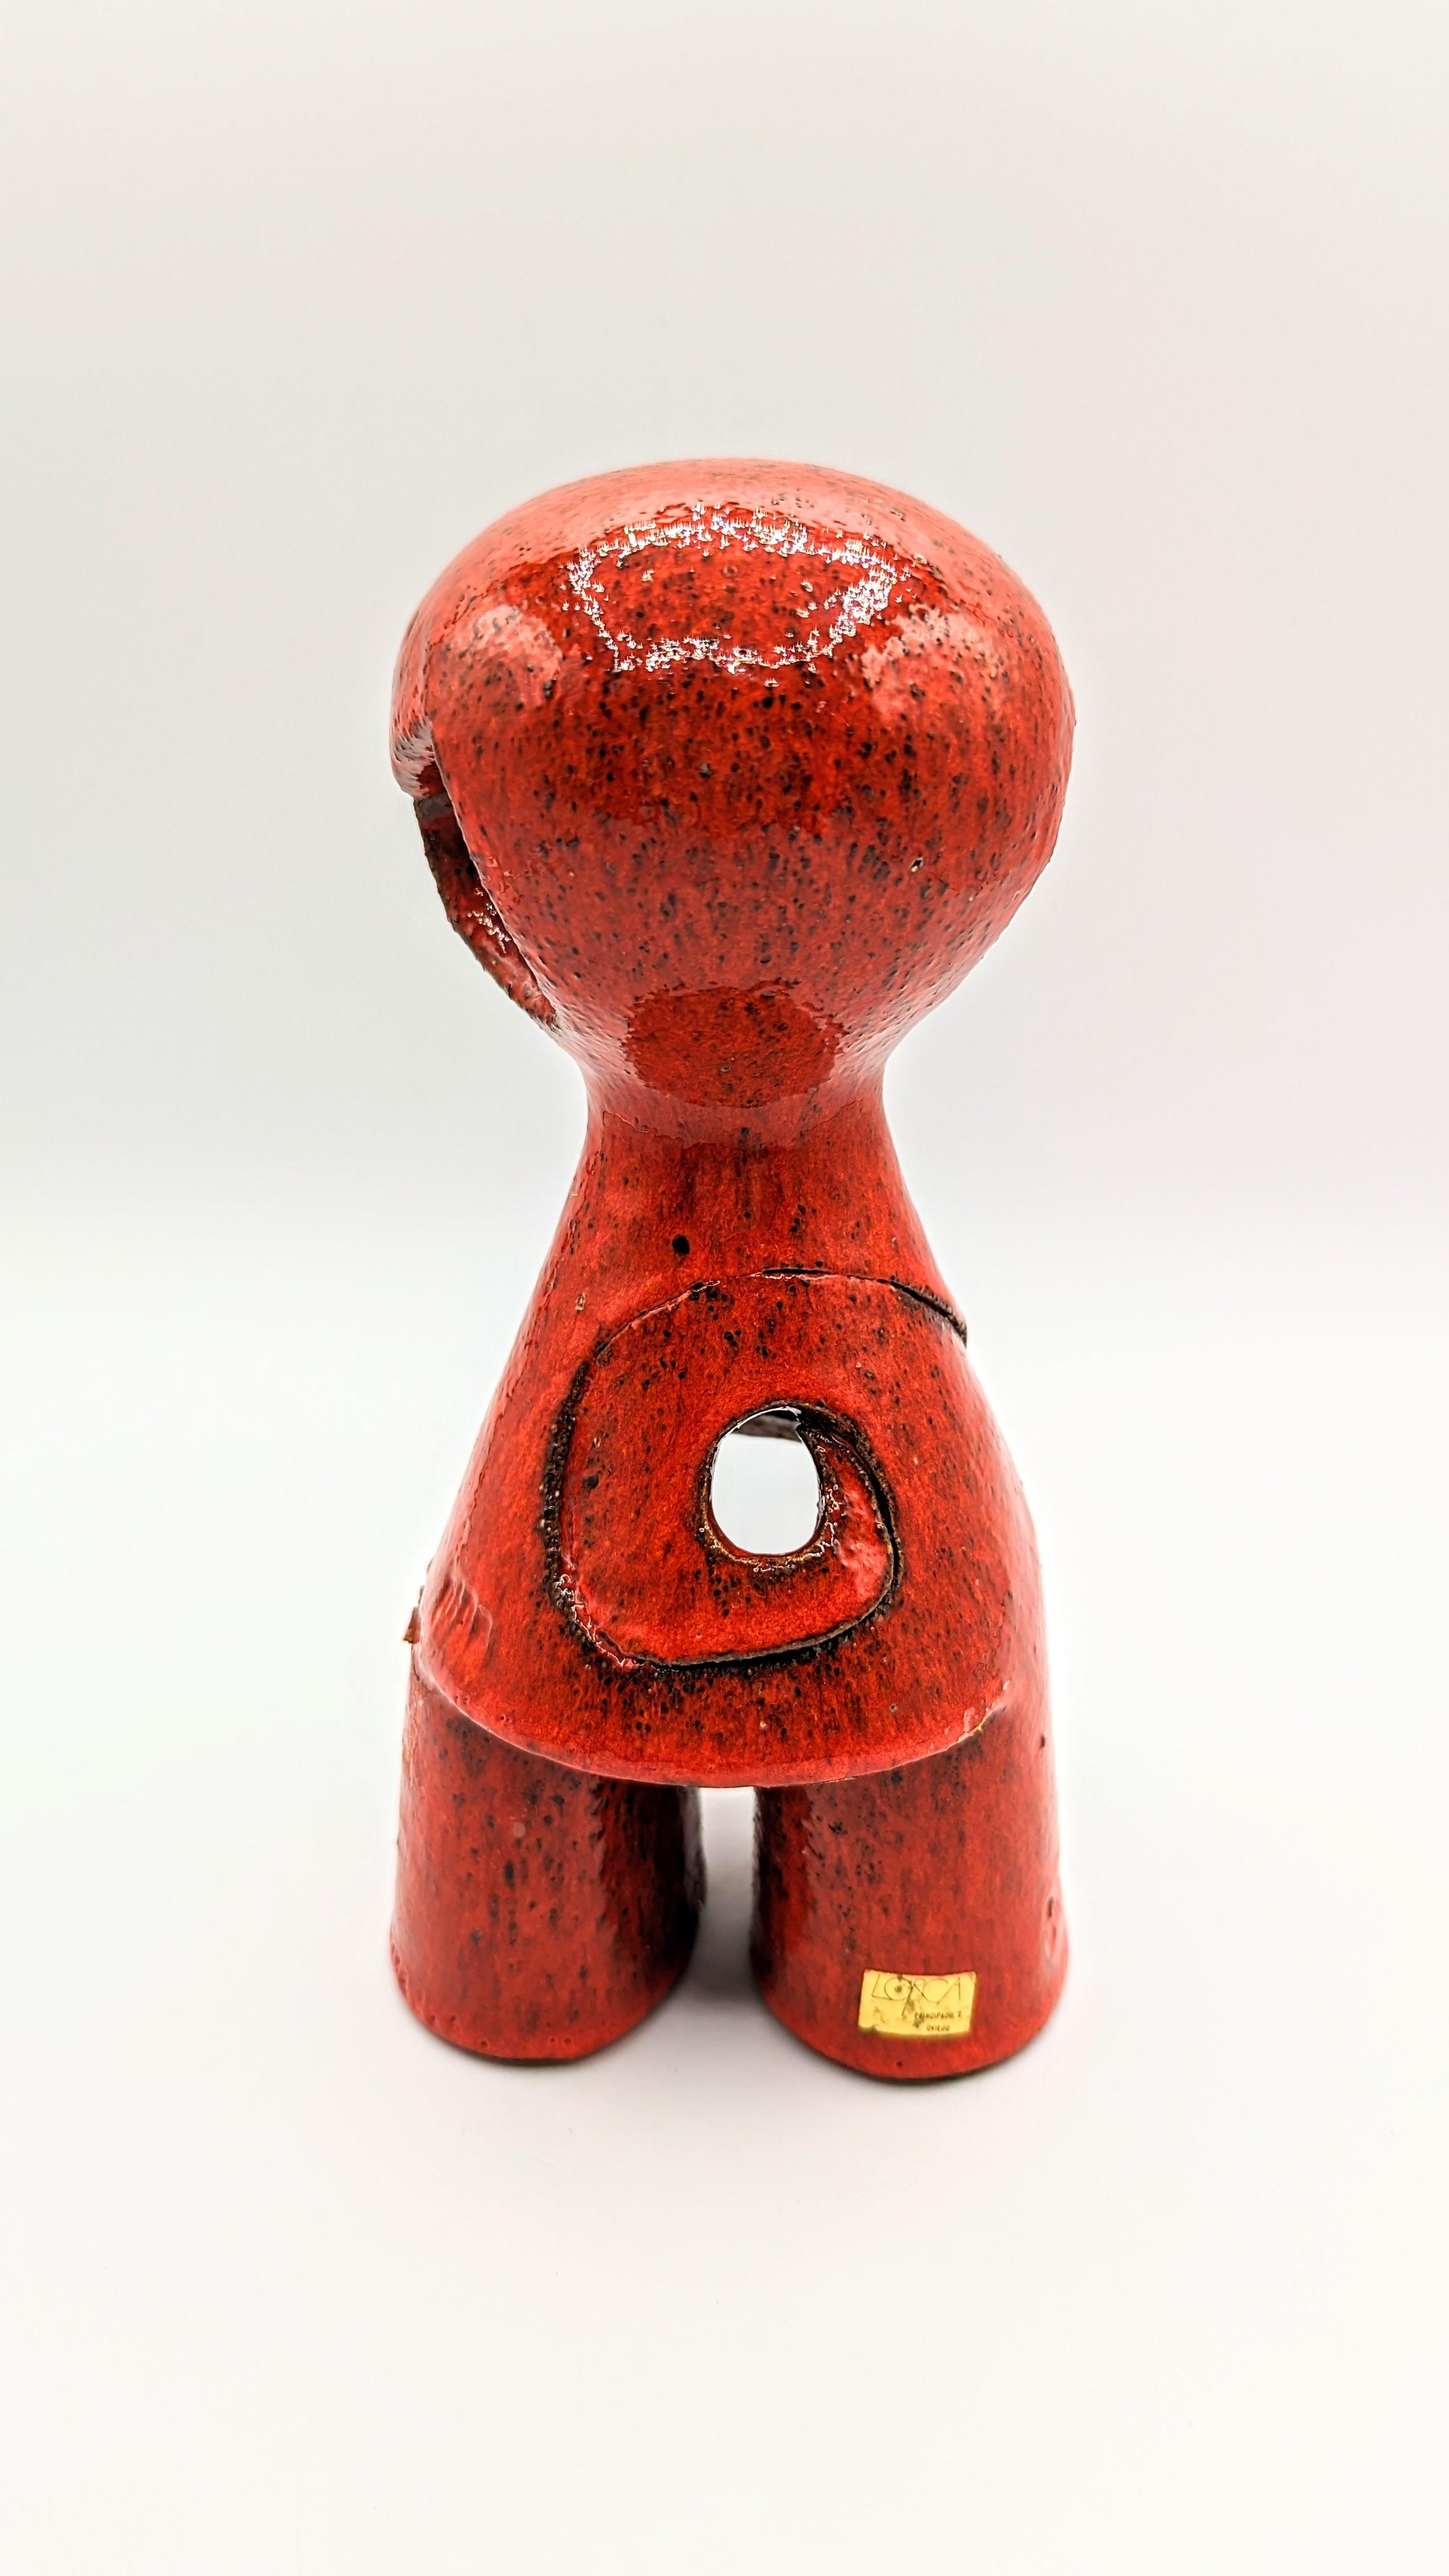 Rare et belle figurine en céramique de Pedro Borja fabriquée dans les années 1960 en Espagne. Série limitée 6/100. Signé.
Objet très décoratif dans une couleur incroyable.